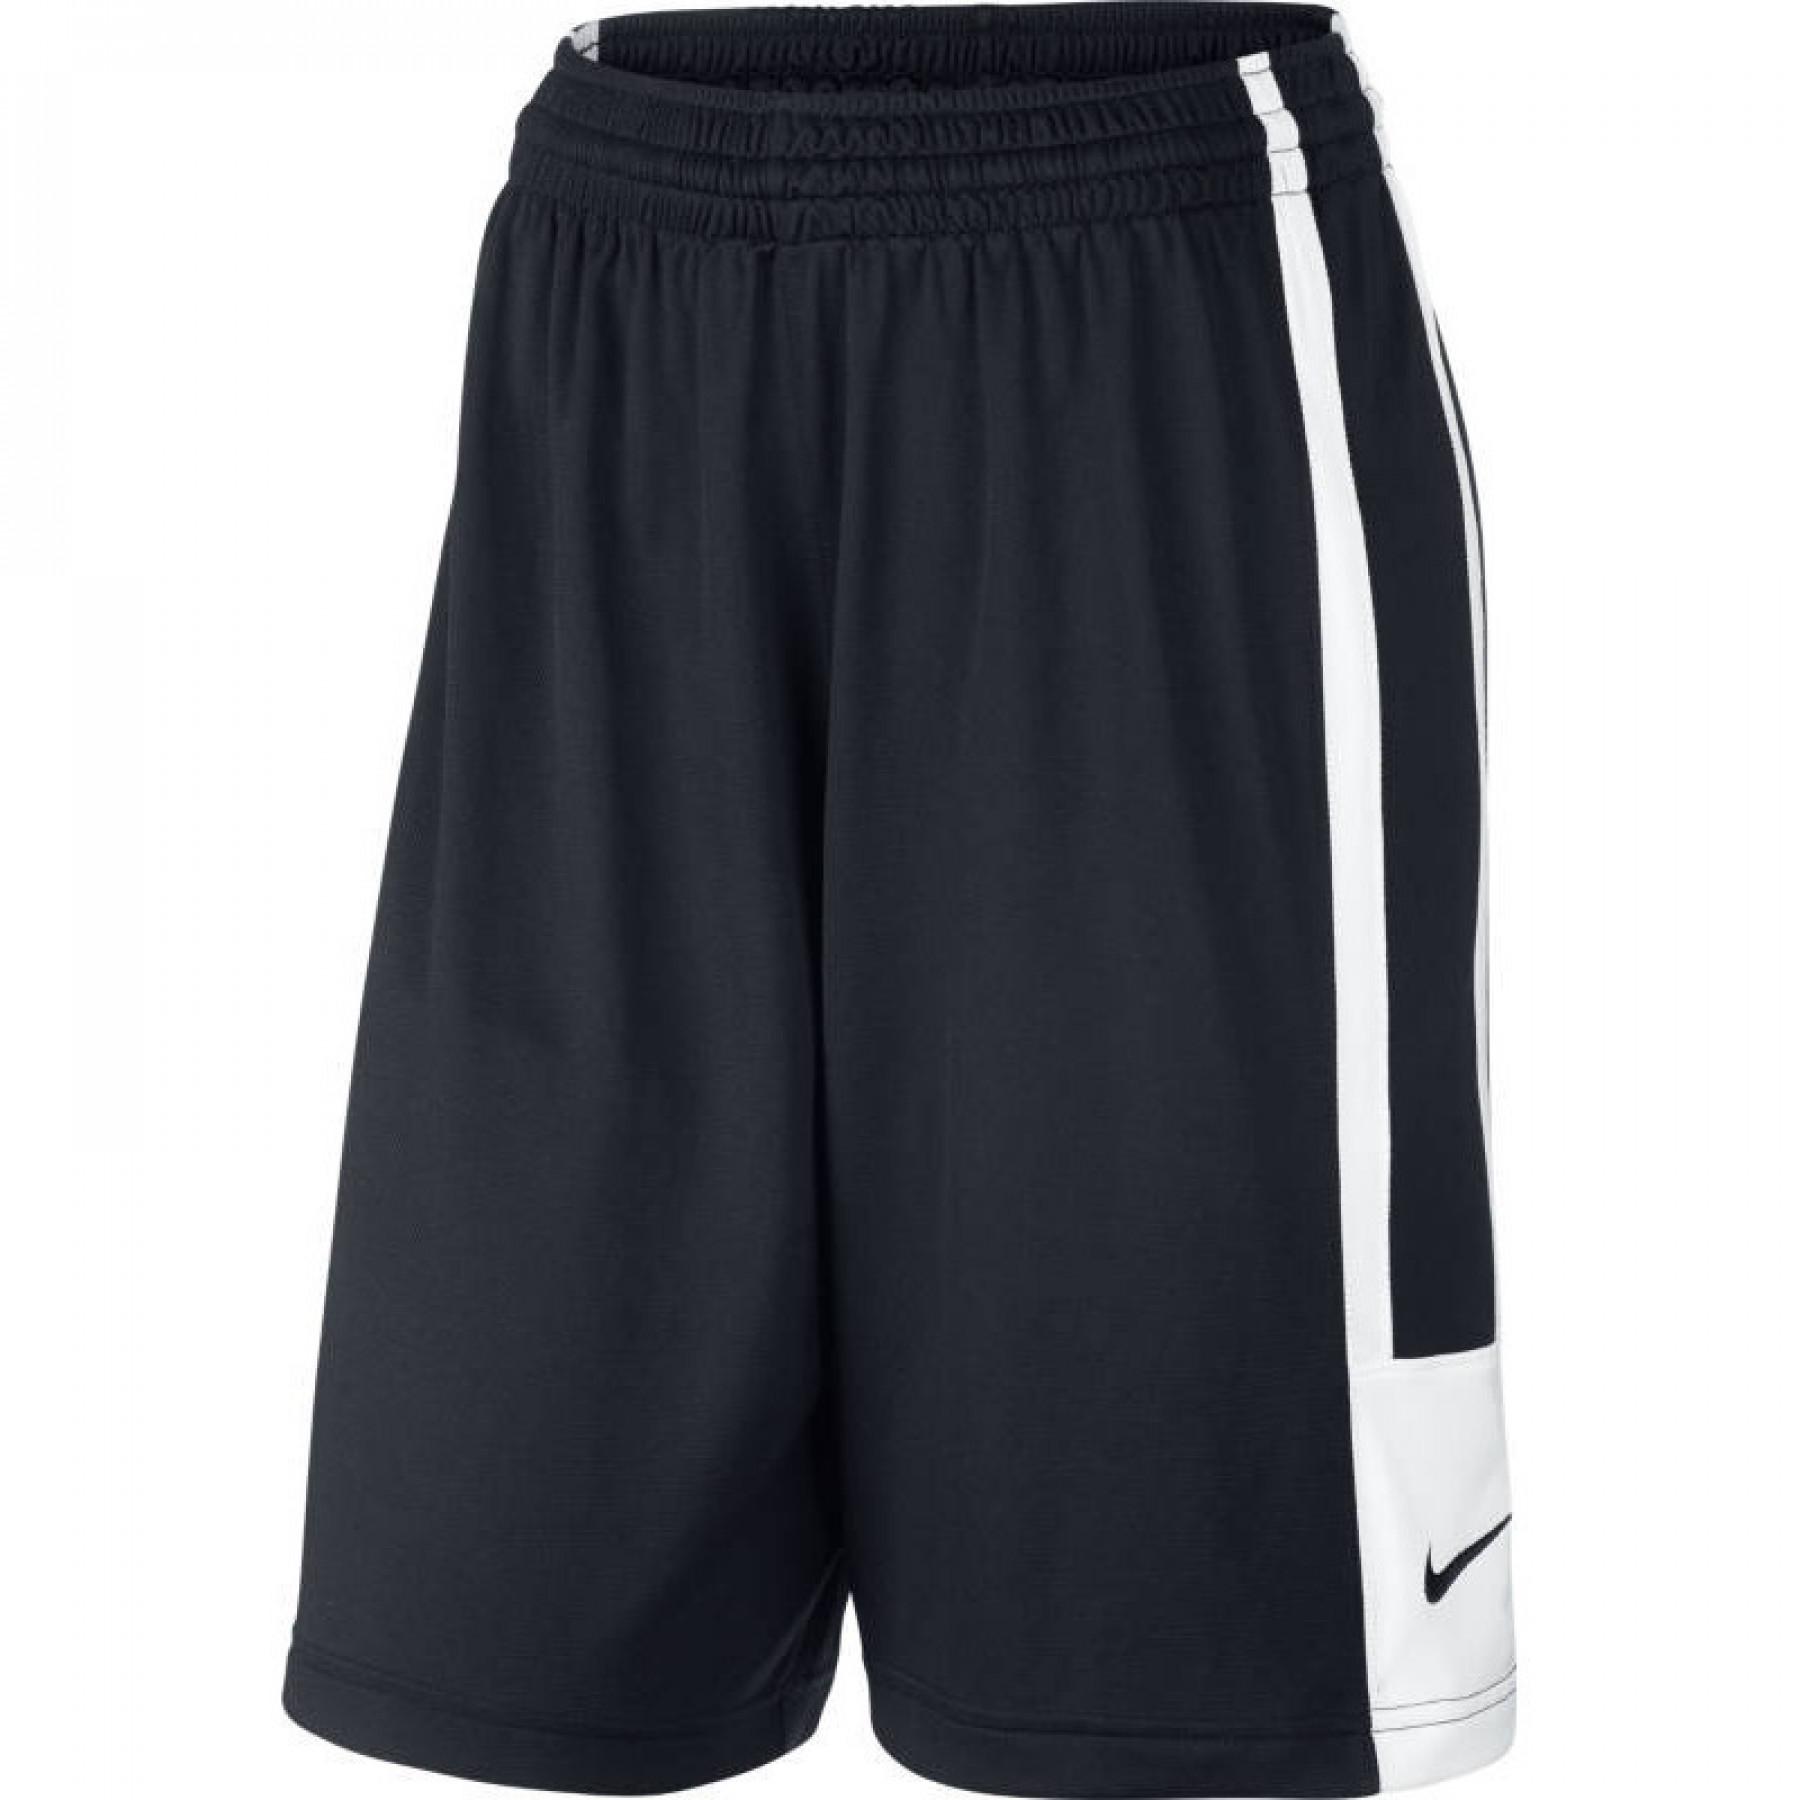 Damen-Shorts Nike League Practice